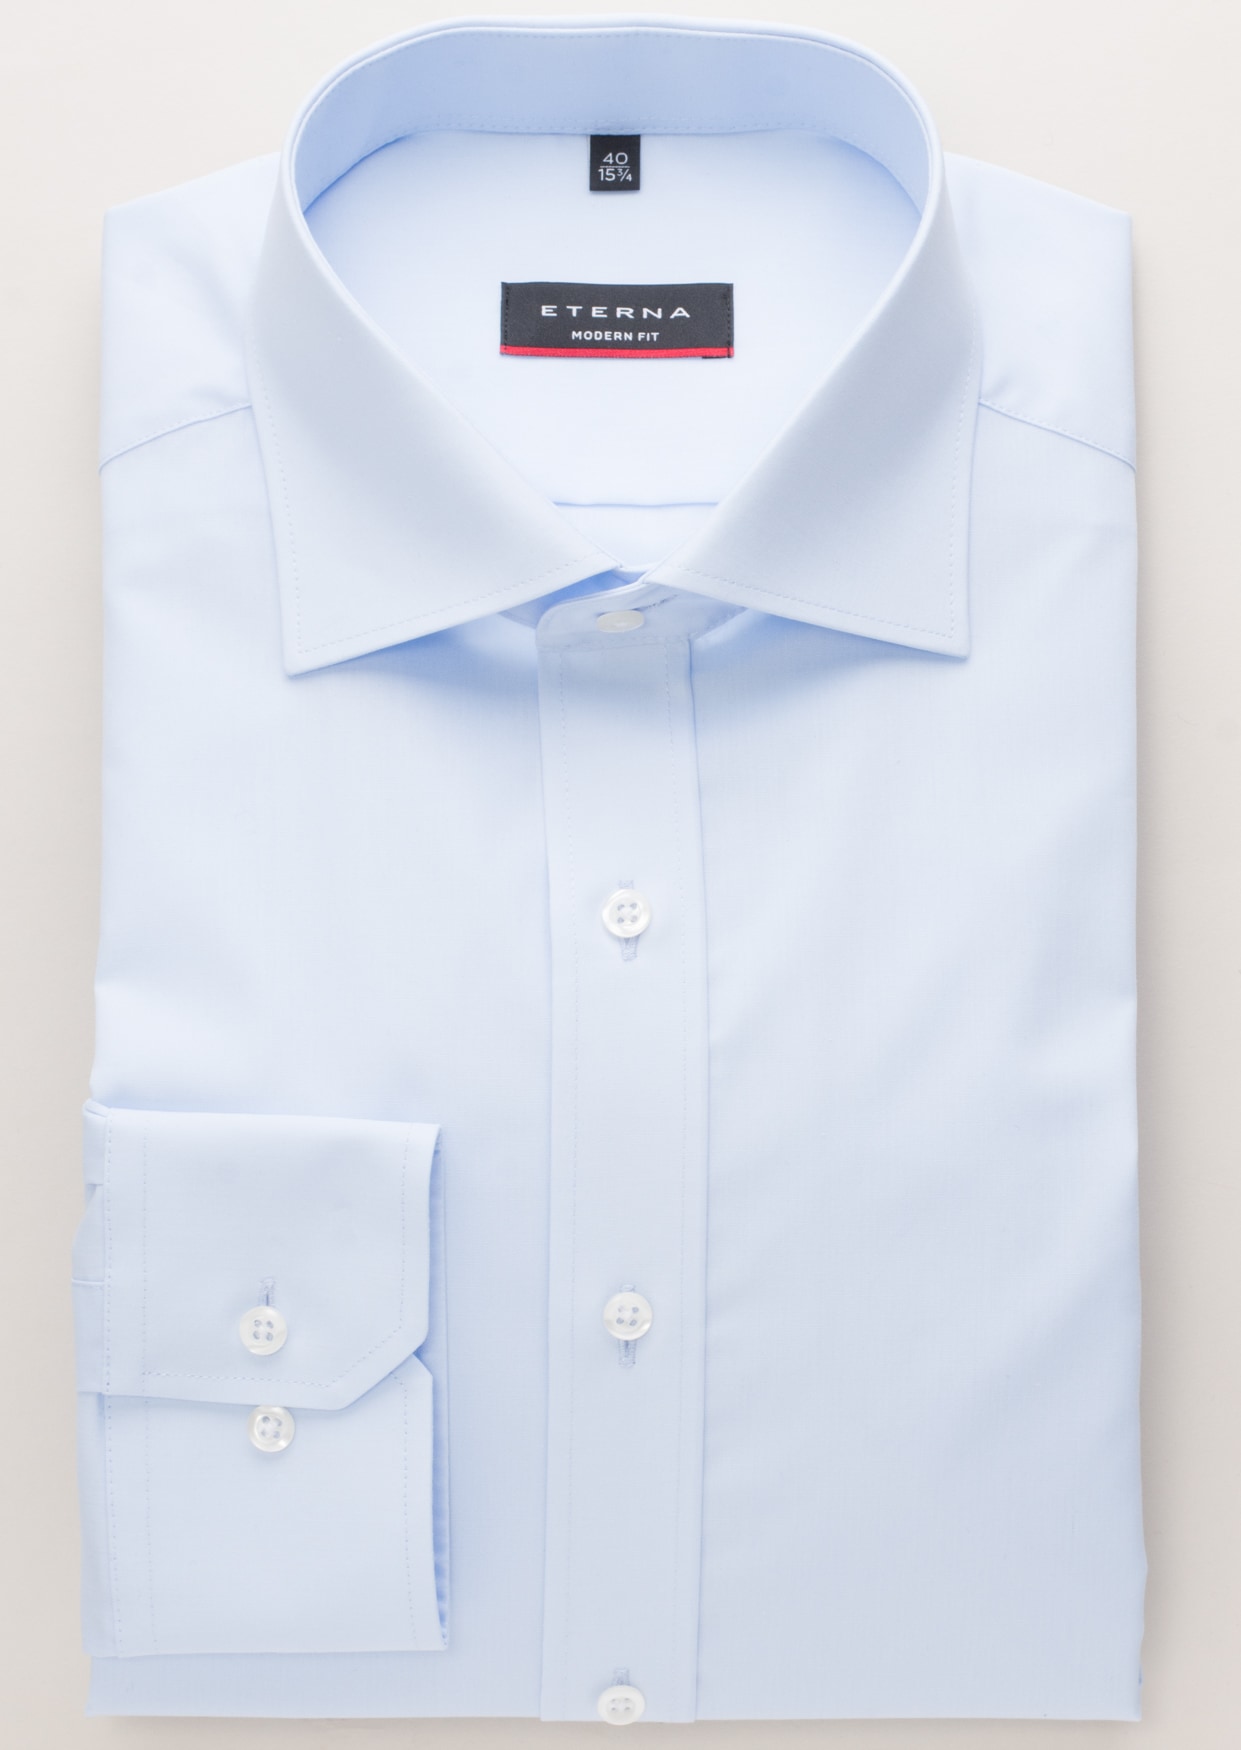 MODERN FIT Original Shirt in 37 | plain light 1SH00113-01-11-37-1/1 | sleeve blue | light blue long 